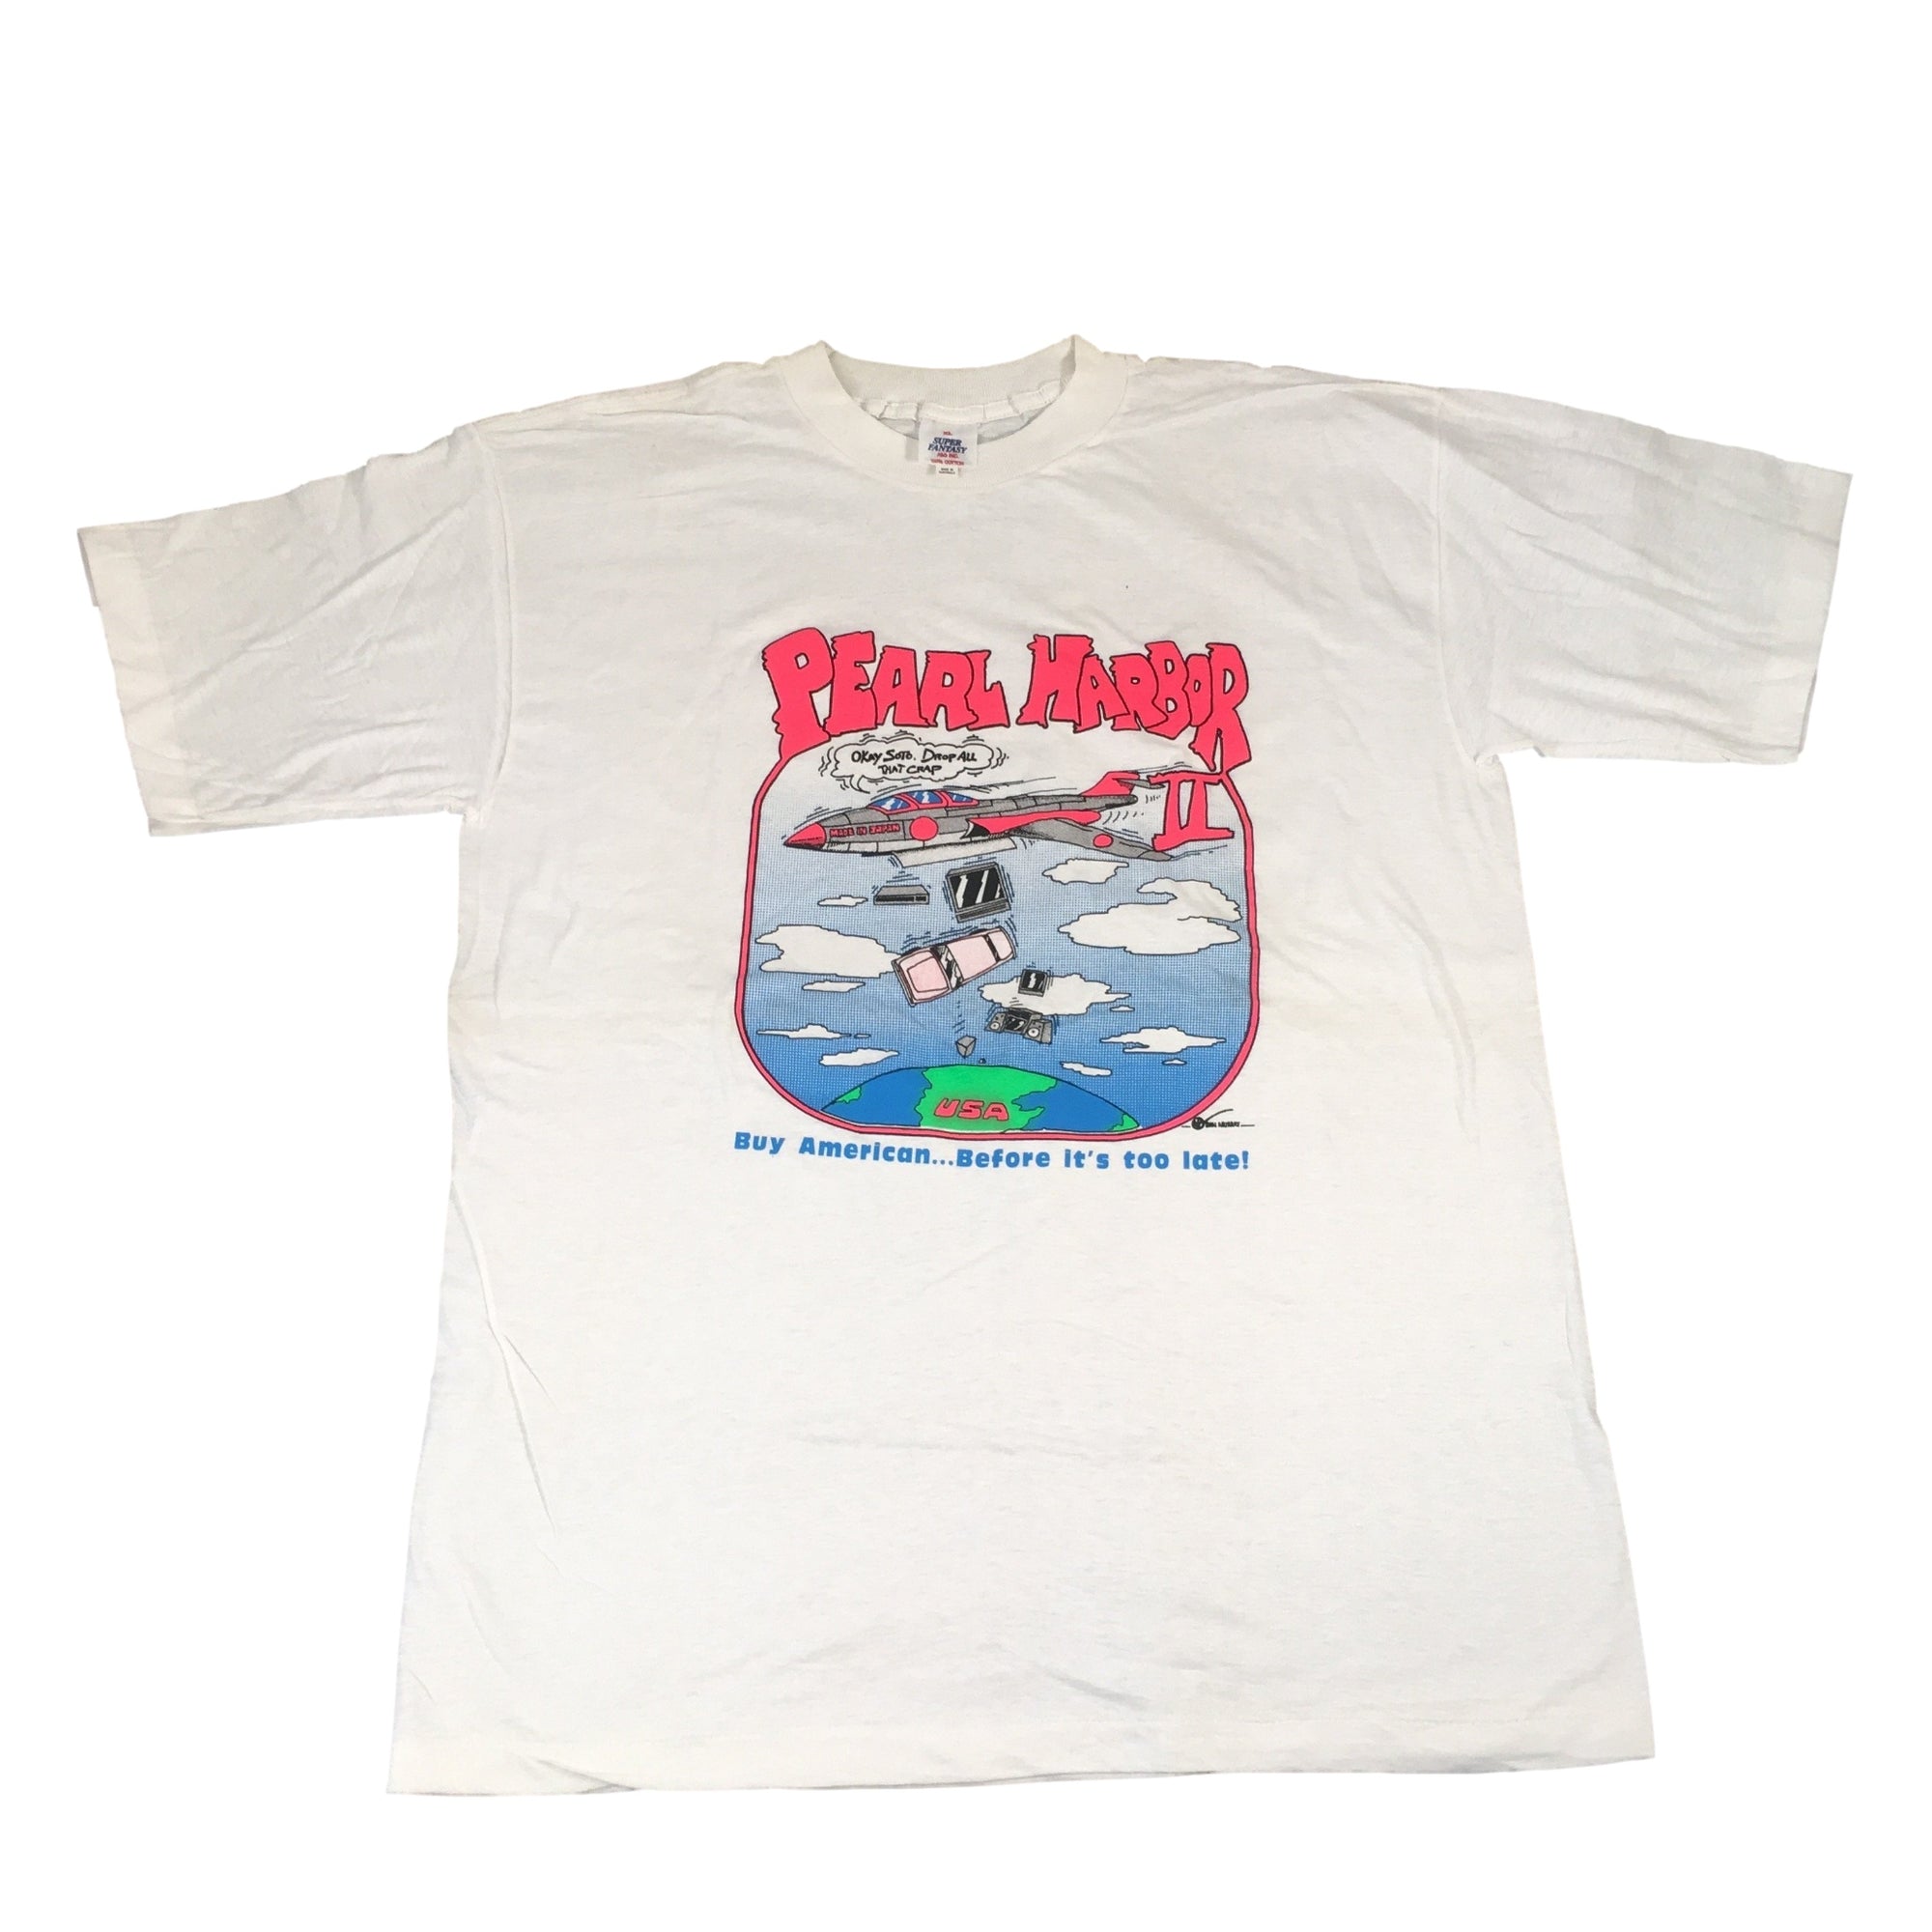 Vintage Pearl Harbor II "Buy American" T-Shirt - jointcustodydc